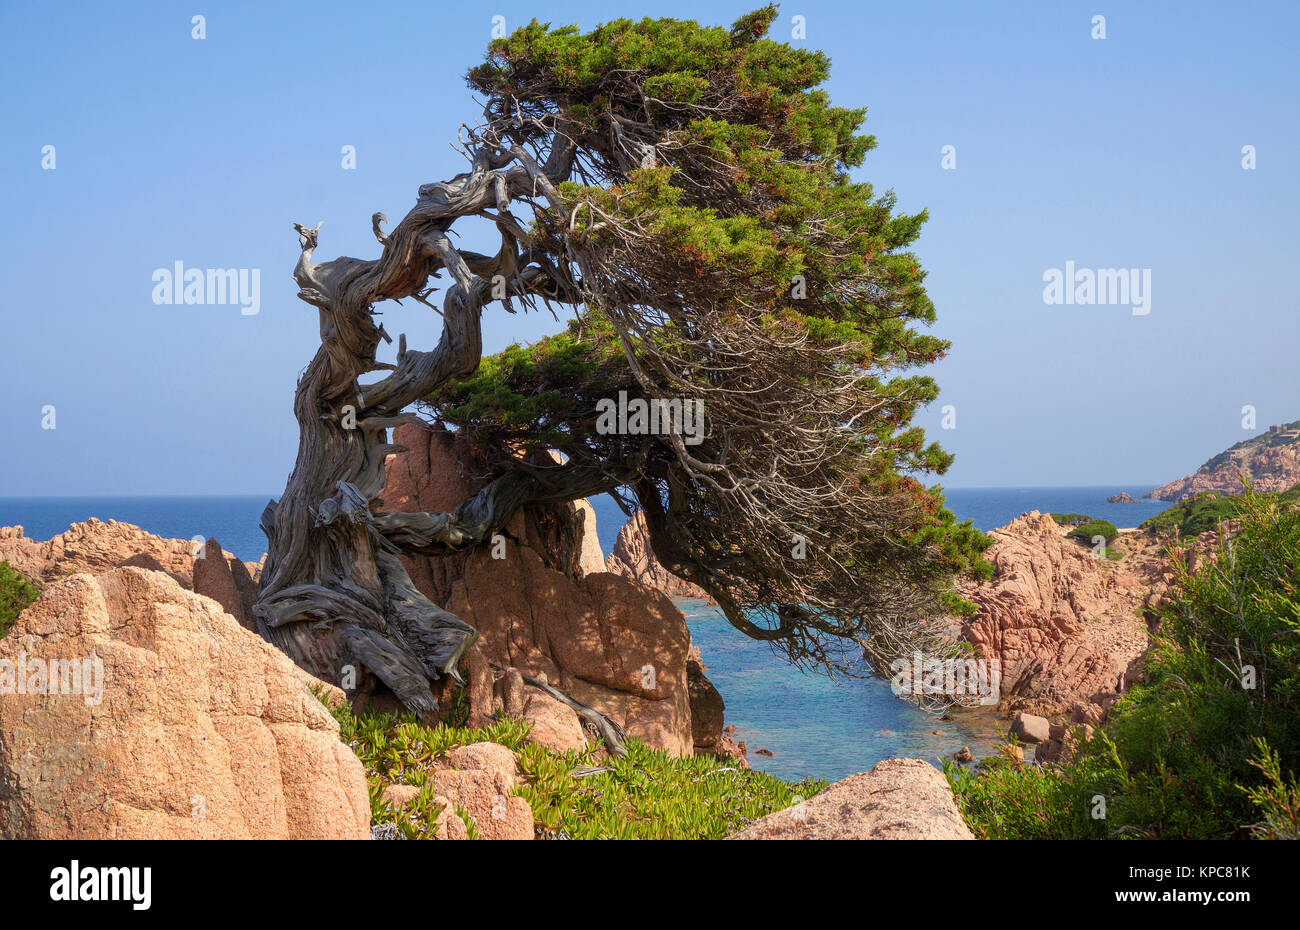 Struttura Wndswept presso la costa rocciosa di Costa Paradiso, rocce di porfido, Sardegna, Italia, mare Mediterraneo, Europa Foto Stock